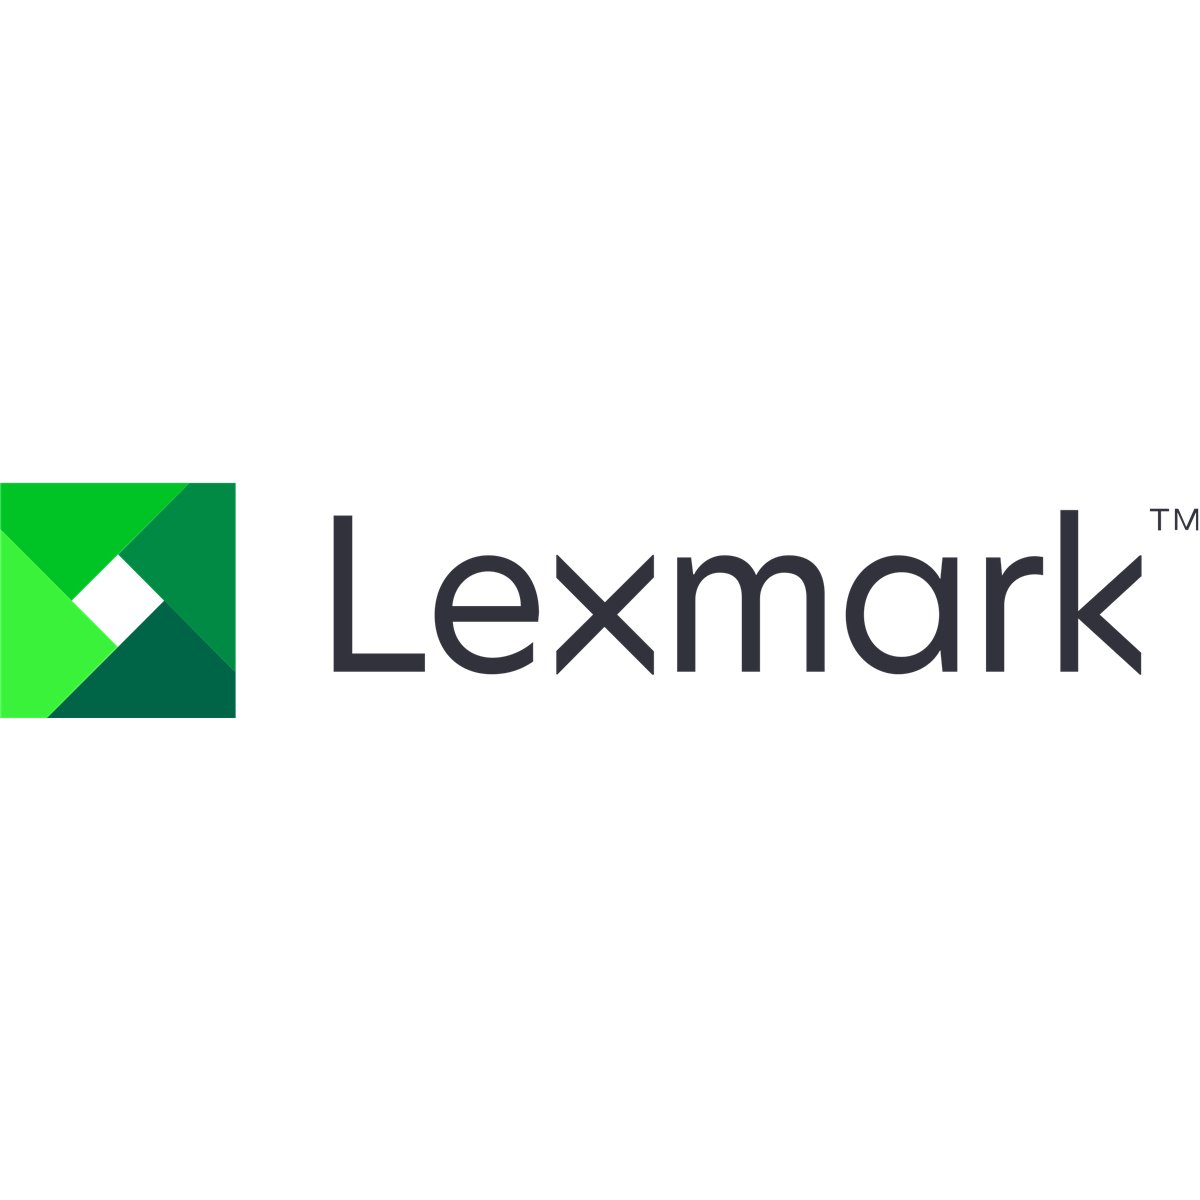 Lexmark E240/E340/E342 550-Blatt Papierzufhrung - 550 sheet